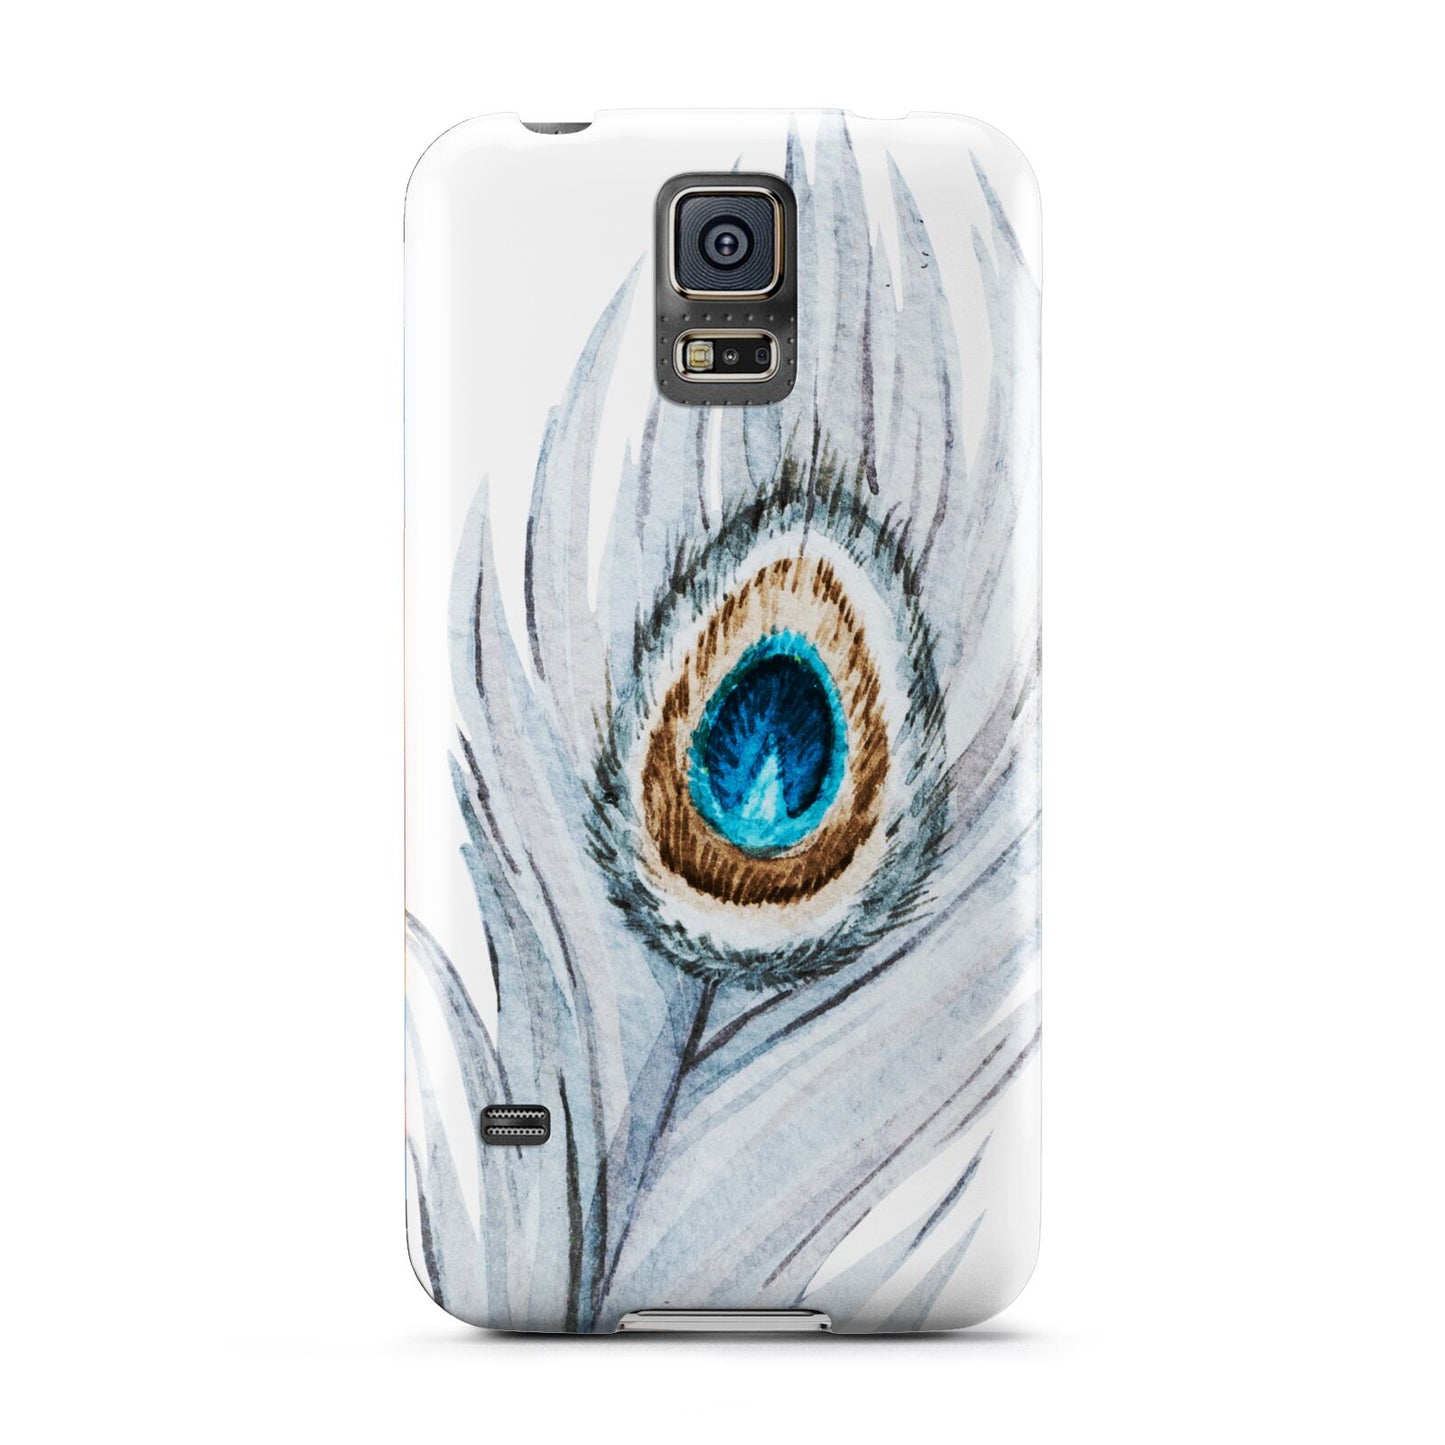 Peacock Samsung Galaxy S5 Case